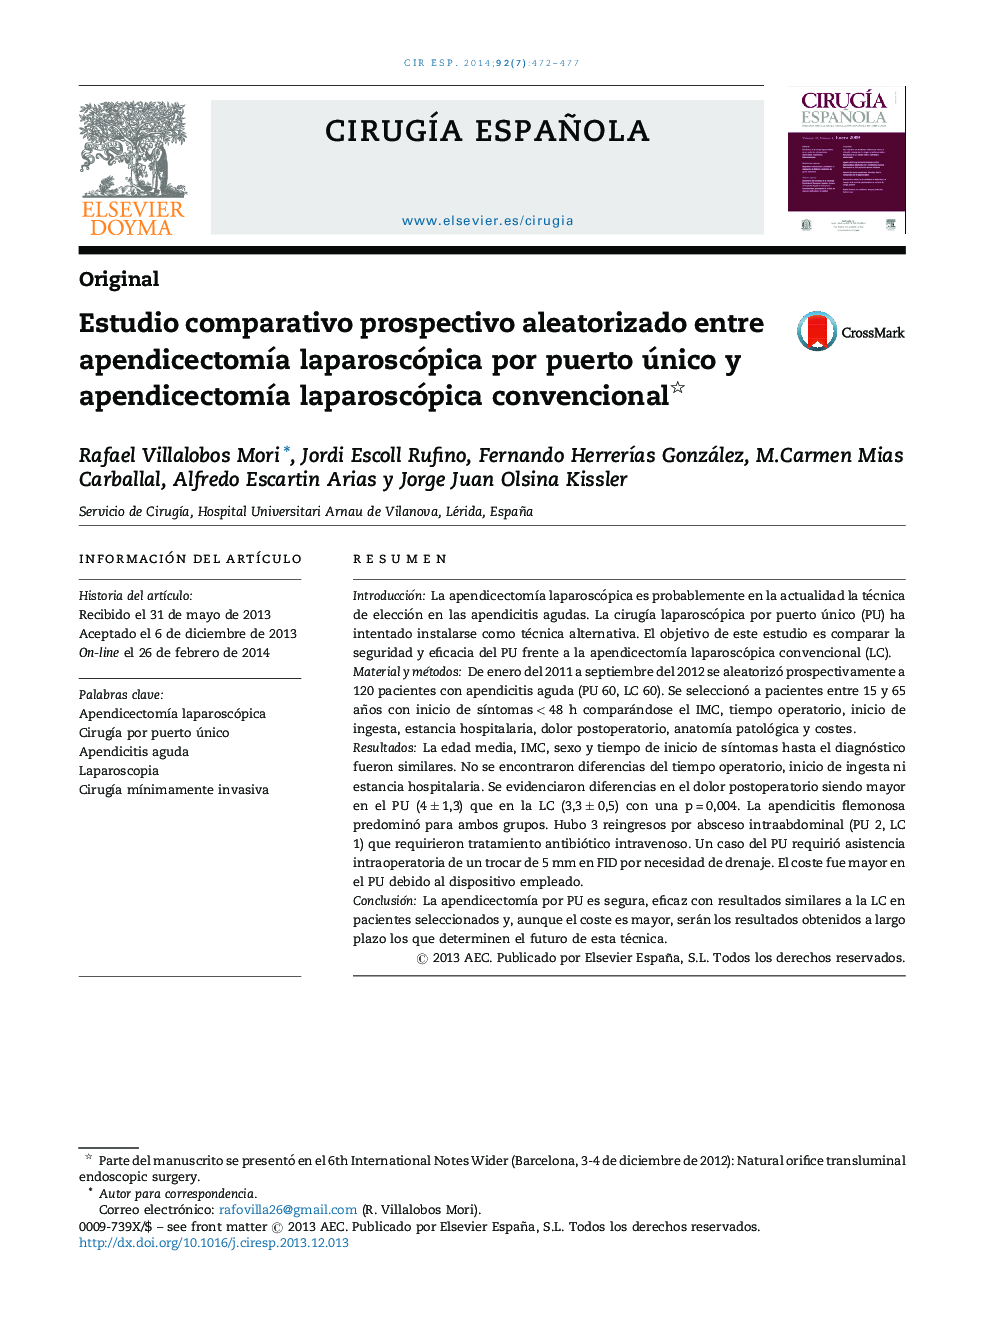 Estudio comparativo prospectivo aleatorizado entre apendicectomía laparoscópica por puerto único y apendicectomía laparoscópica convencional 